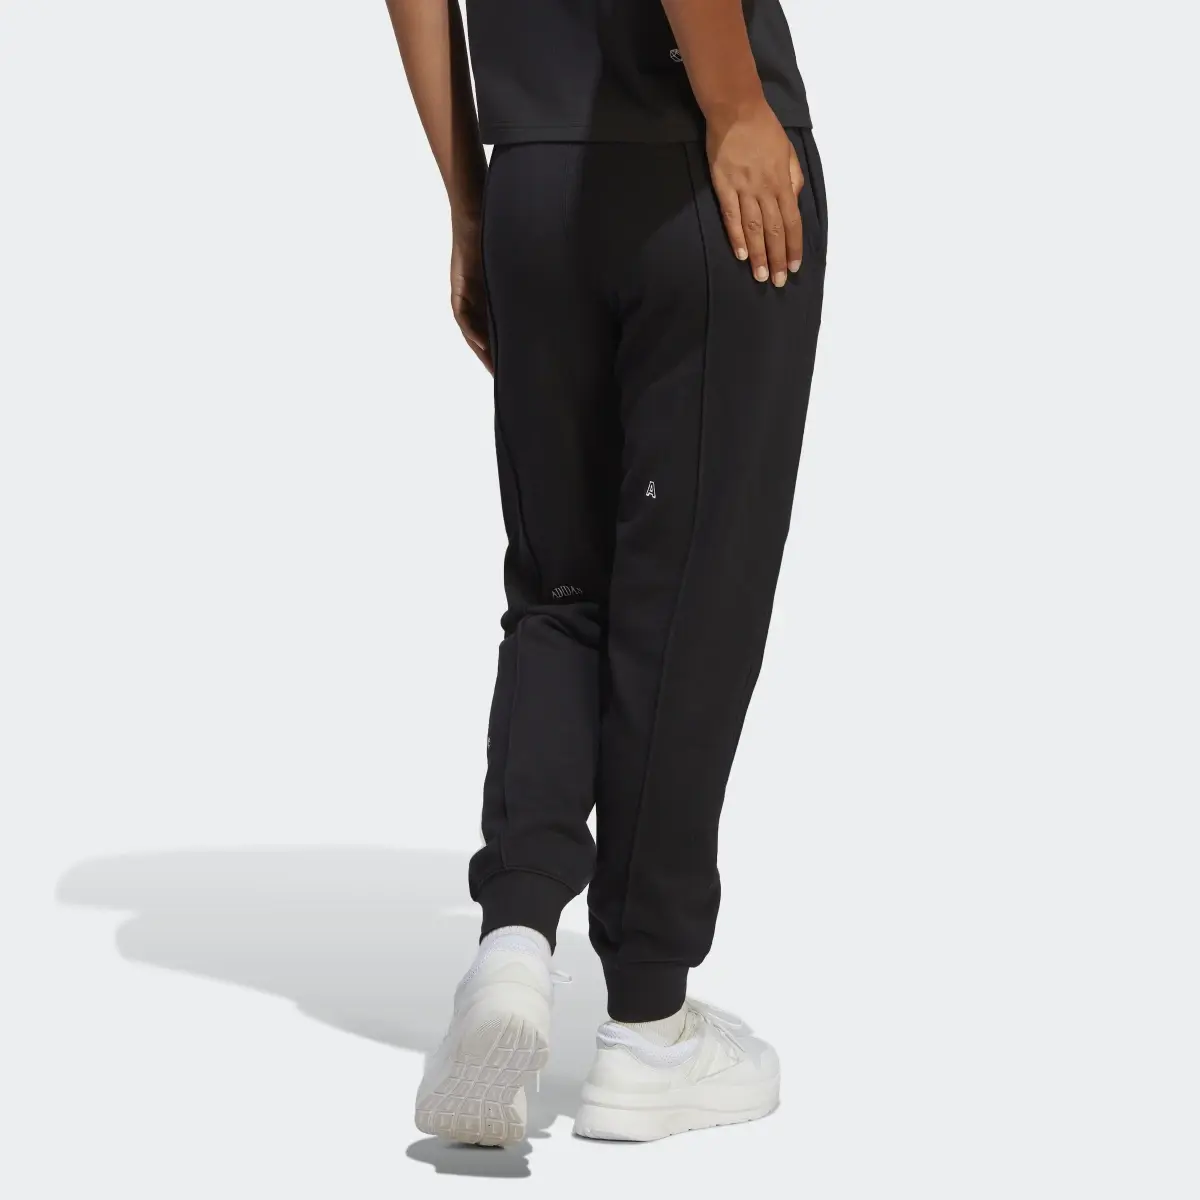 Adidas Pantalon sportswear avec graphismes inspirés de la lithothérapie. 3